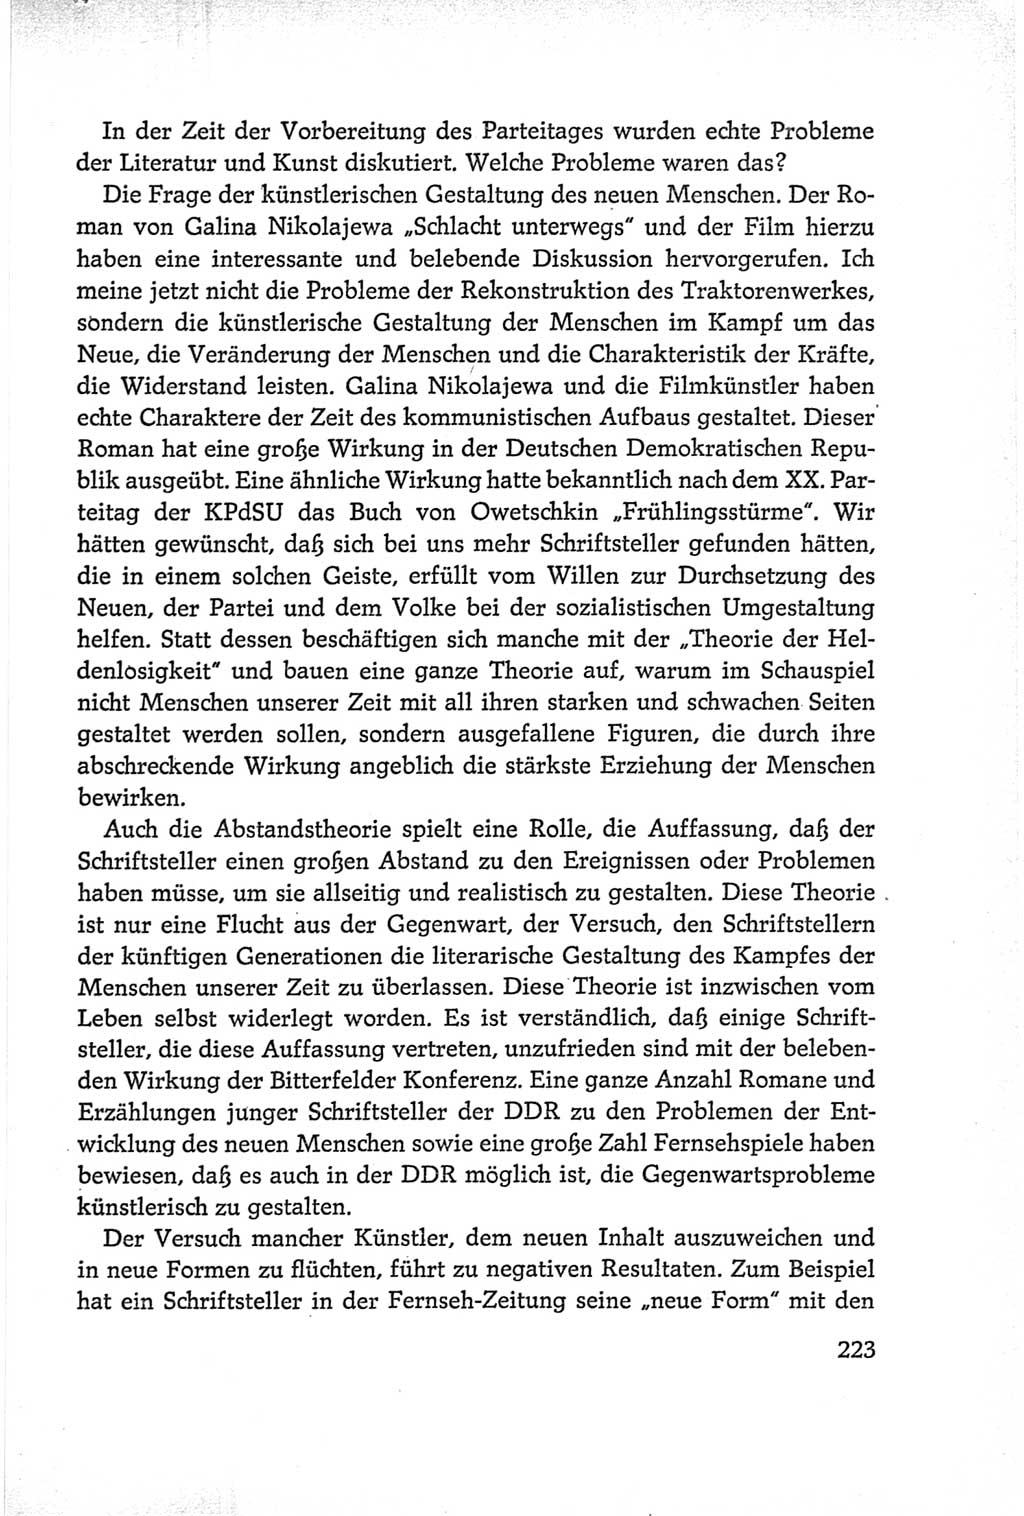 Protokoll der Verhandlungen des Ⅵ. Parteitages der Sozialistischen Einheitspartei Deutschlands (SED) [Deutsche Demokratische Republik (DDR)] 1963, Band Ⅰ, Seite 223 (Prot. Verh. Ⅵ. PT SED DDR 1963, Bd. Ⅰ, S. 223)